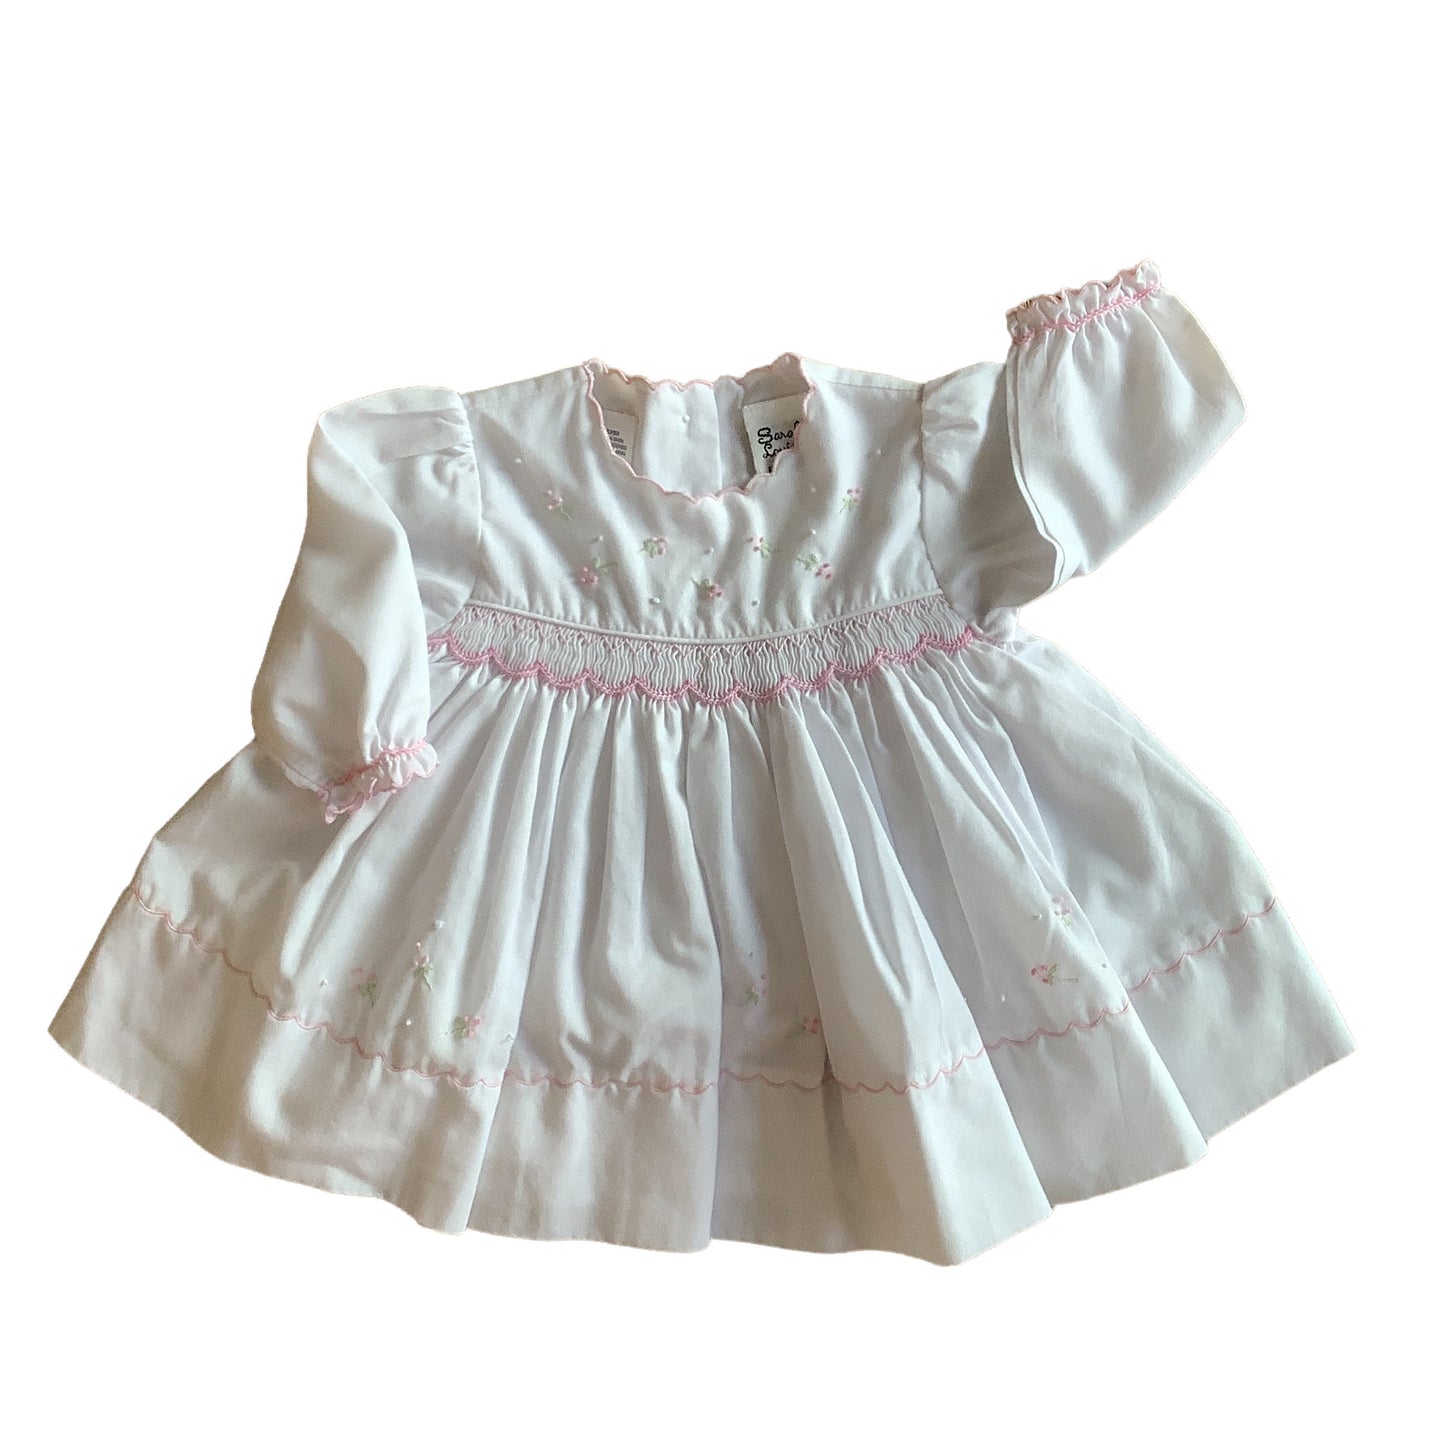 1980s White SARAH LOUISE  Smock Dress / 0-3 Months